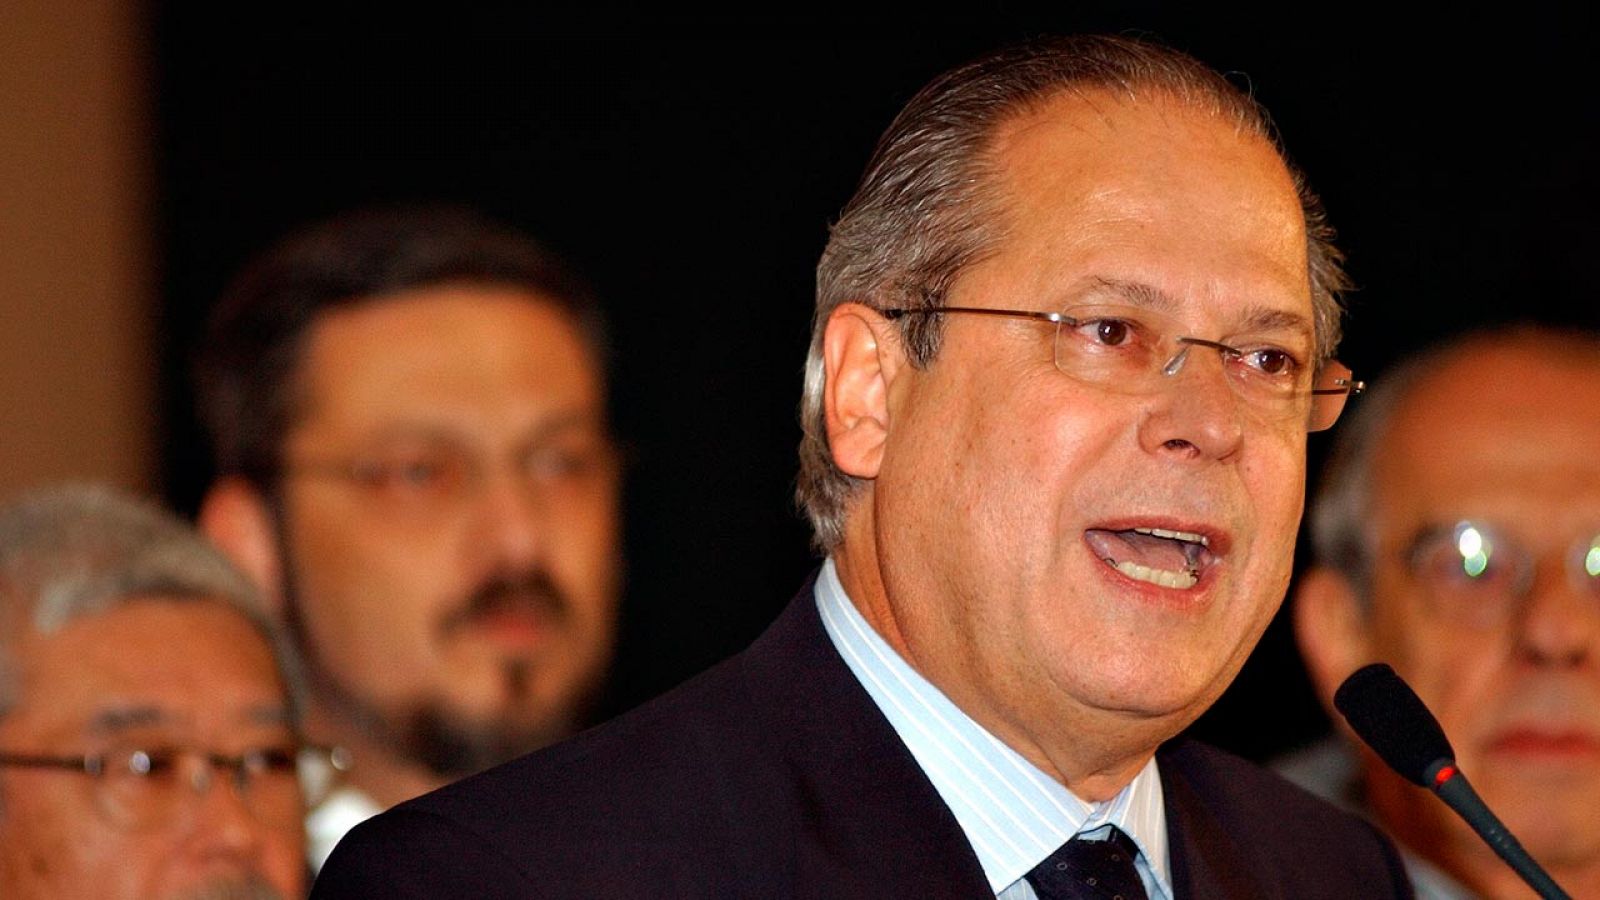 El exministro brasileño José Dirceu, en una imagen de su dimisión en 2005